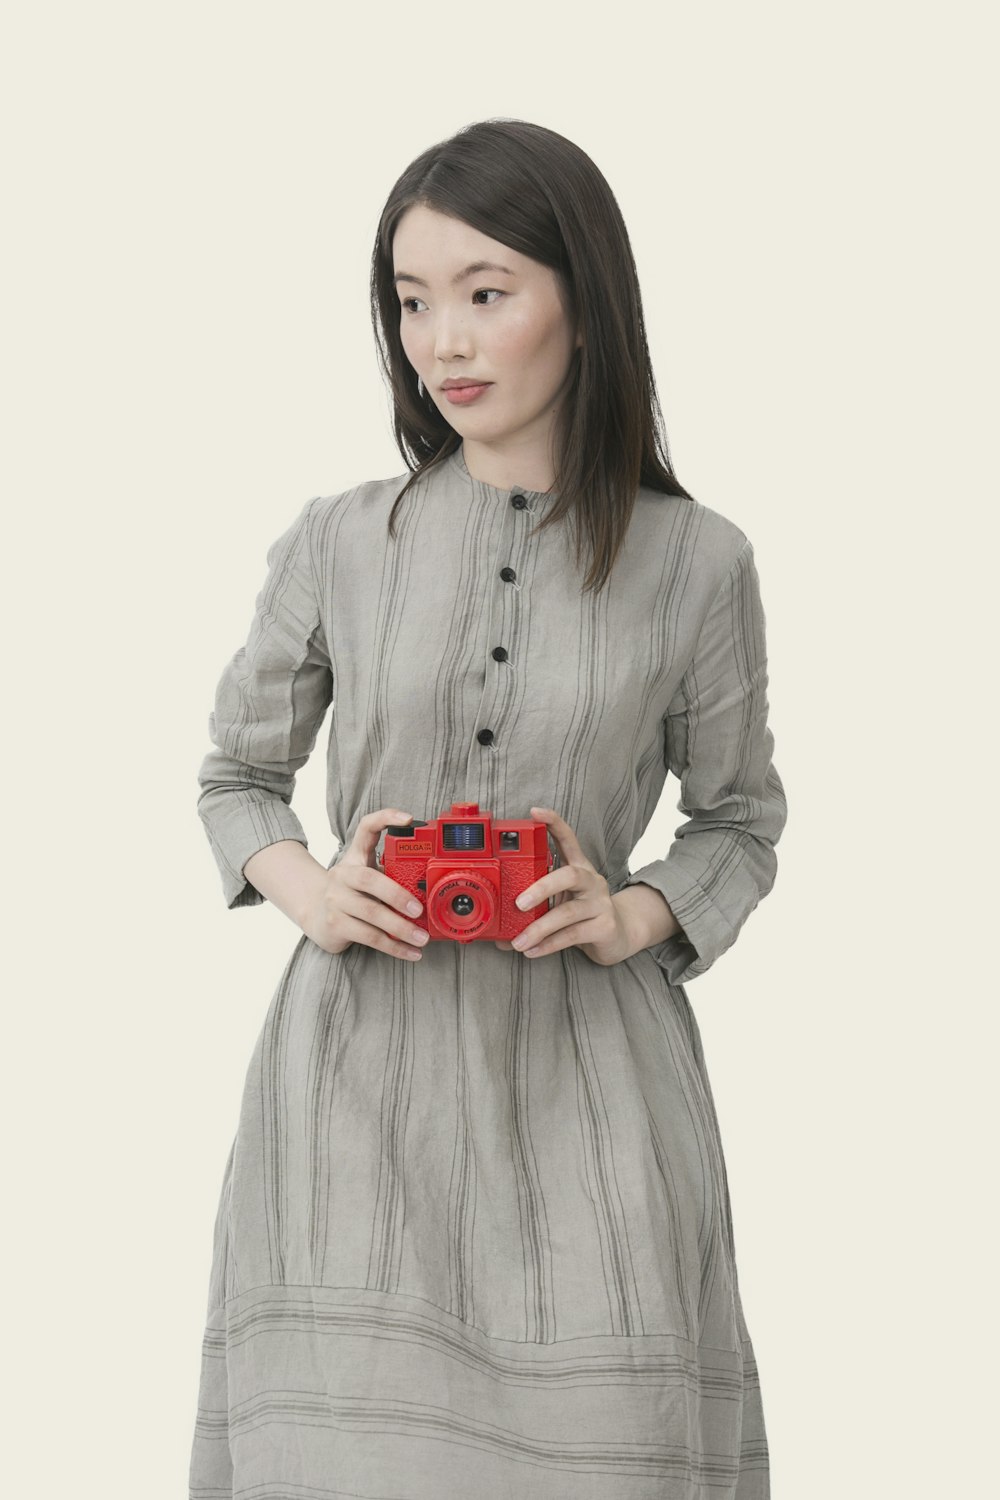 mujer con vestido de manga larga con botones a rayas grises sosteniendo una cámara roja de apuntar y disparar